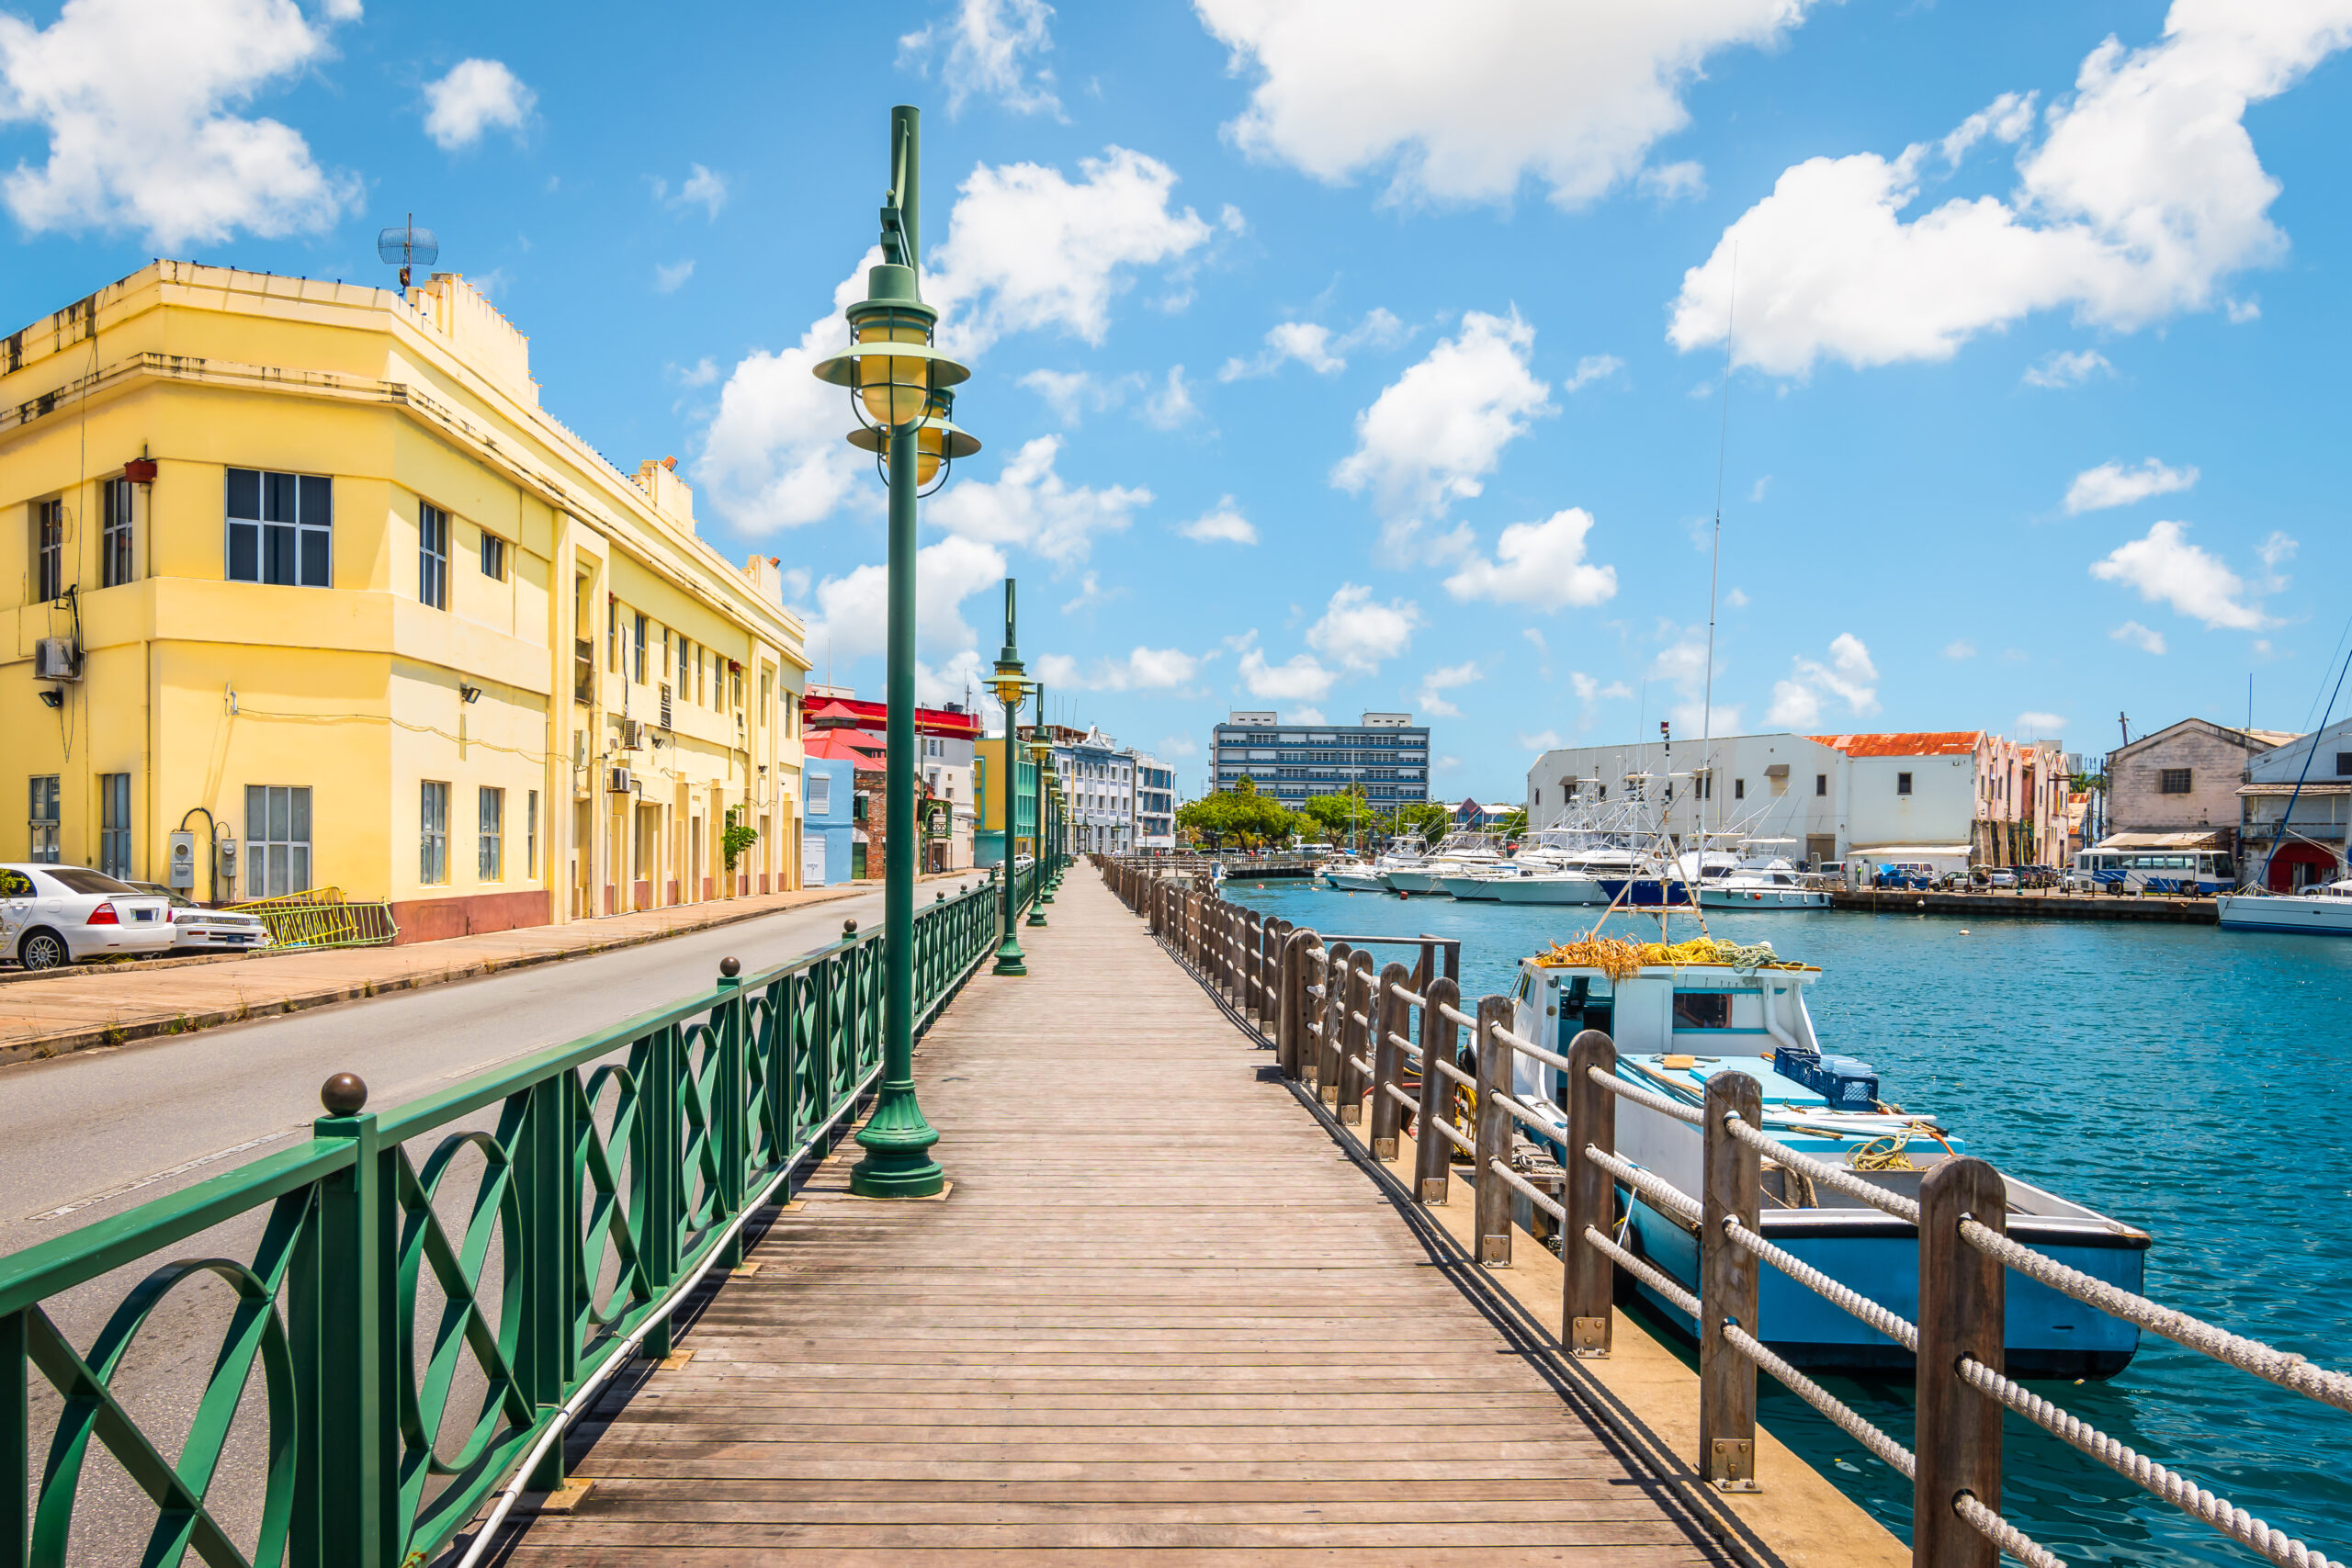 Visit Barbados - 🇧🇧 “Historic Bridgetown Barbados: Worth